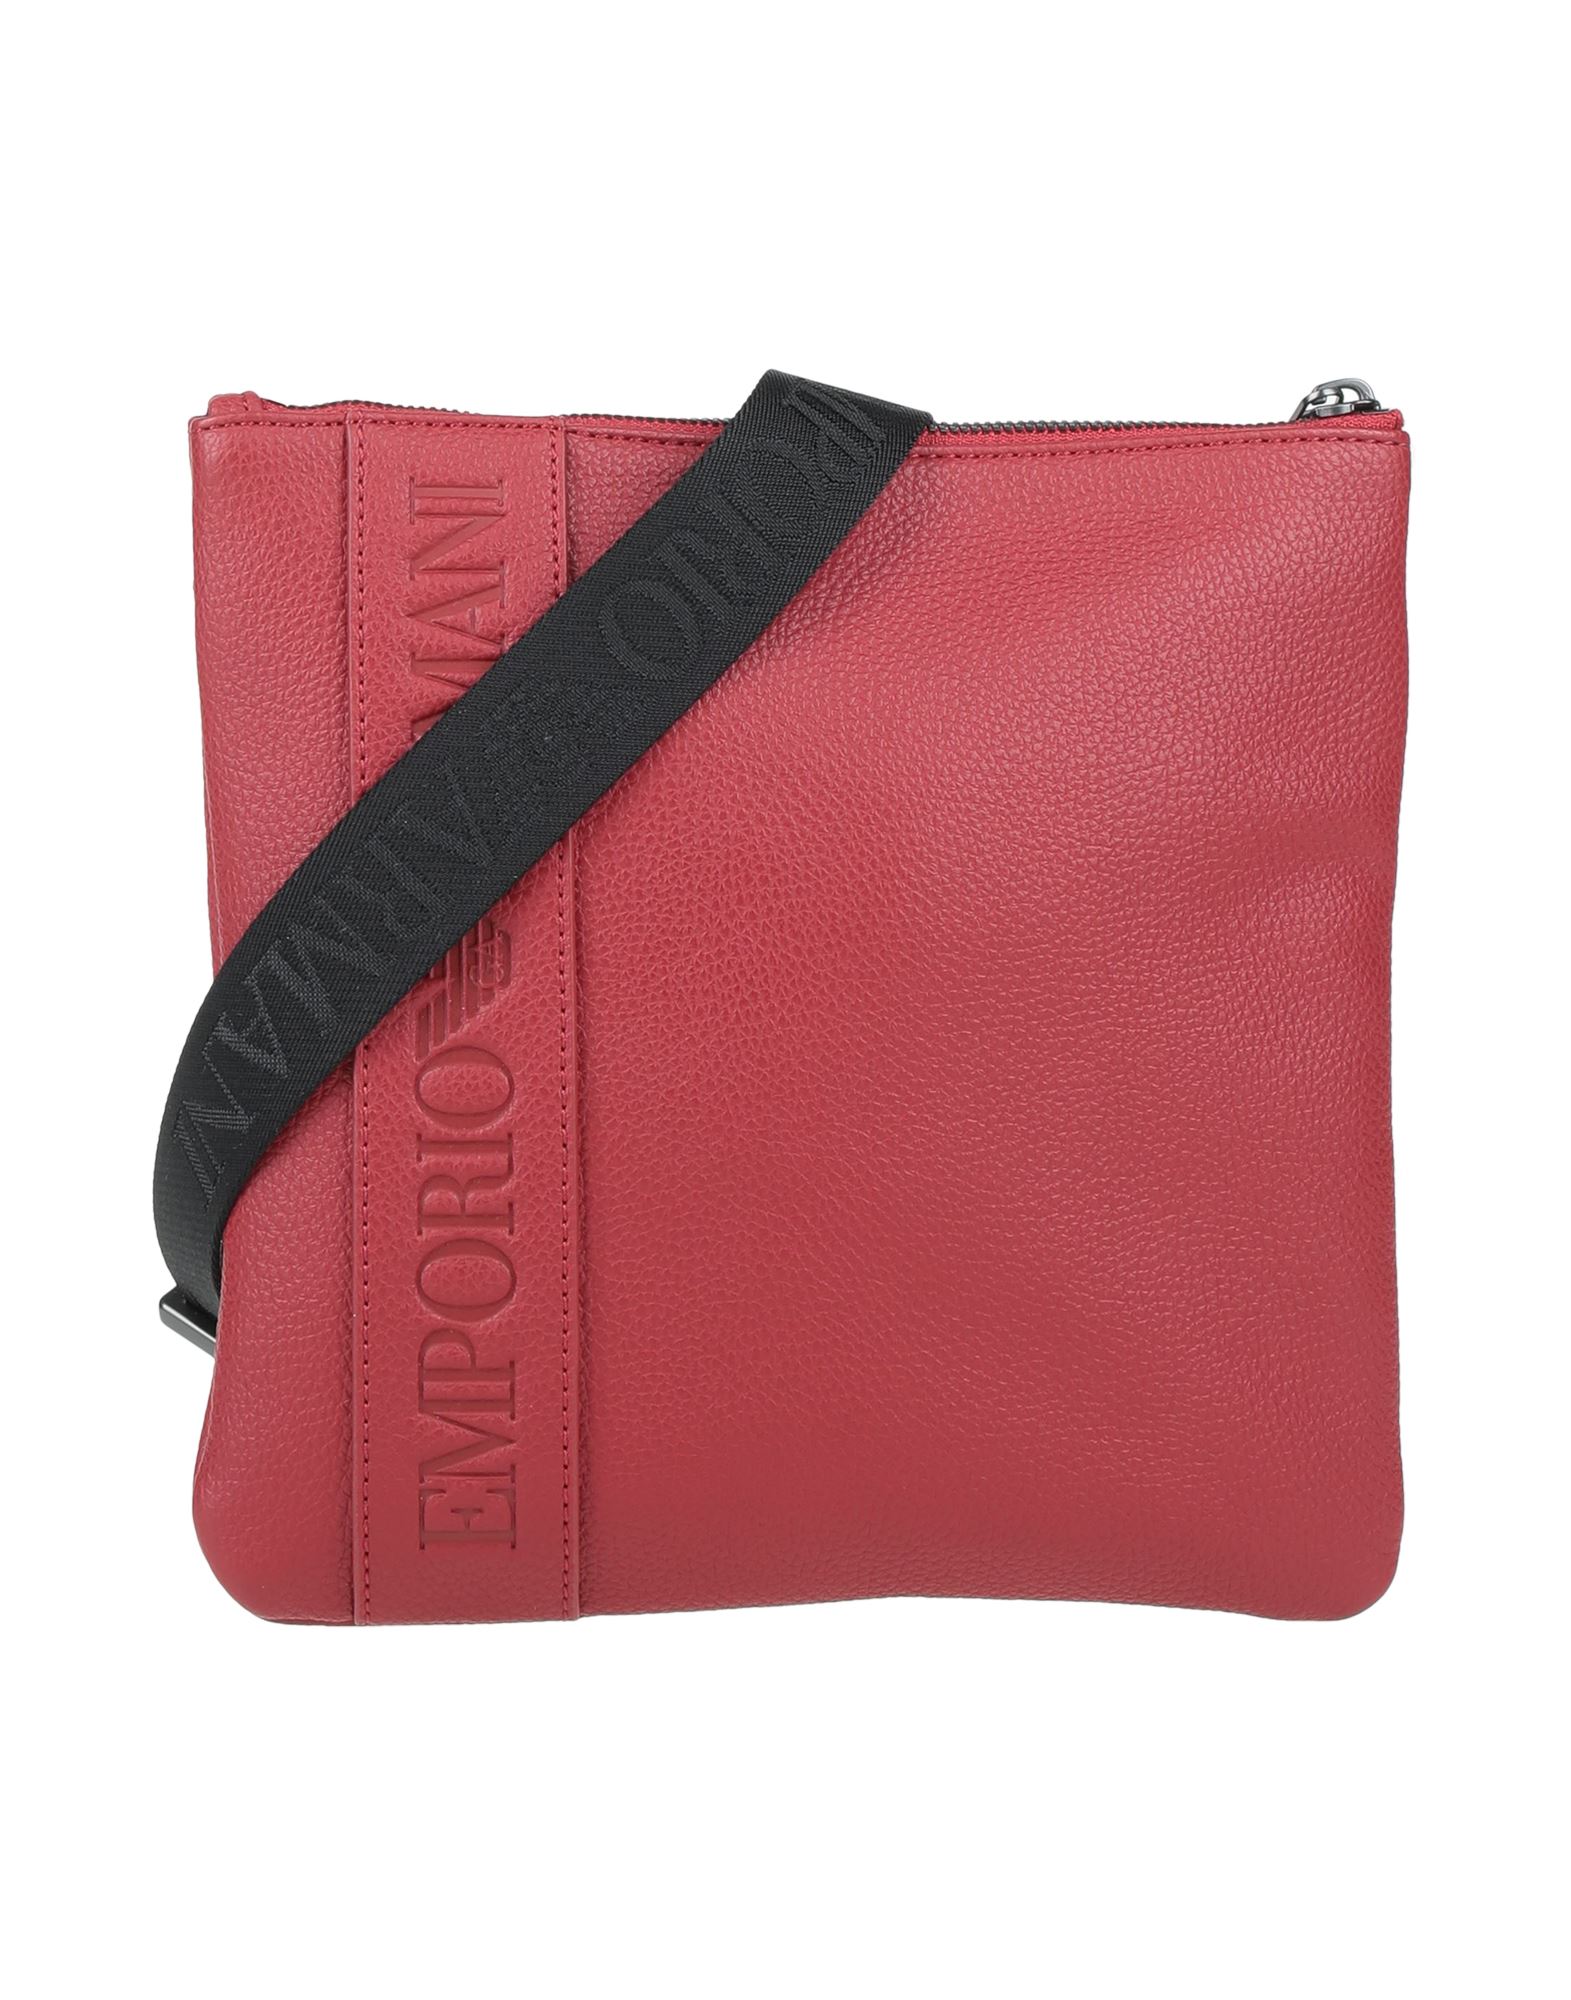 Emporio Armani Handbags In Red